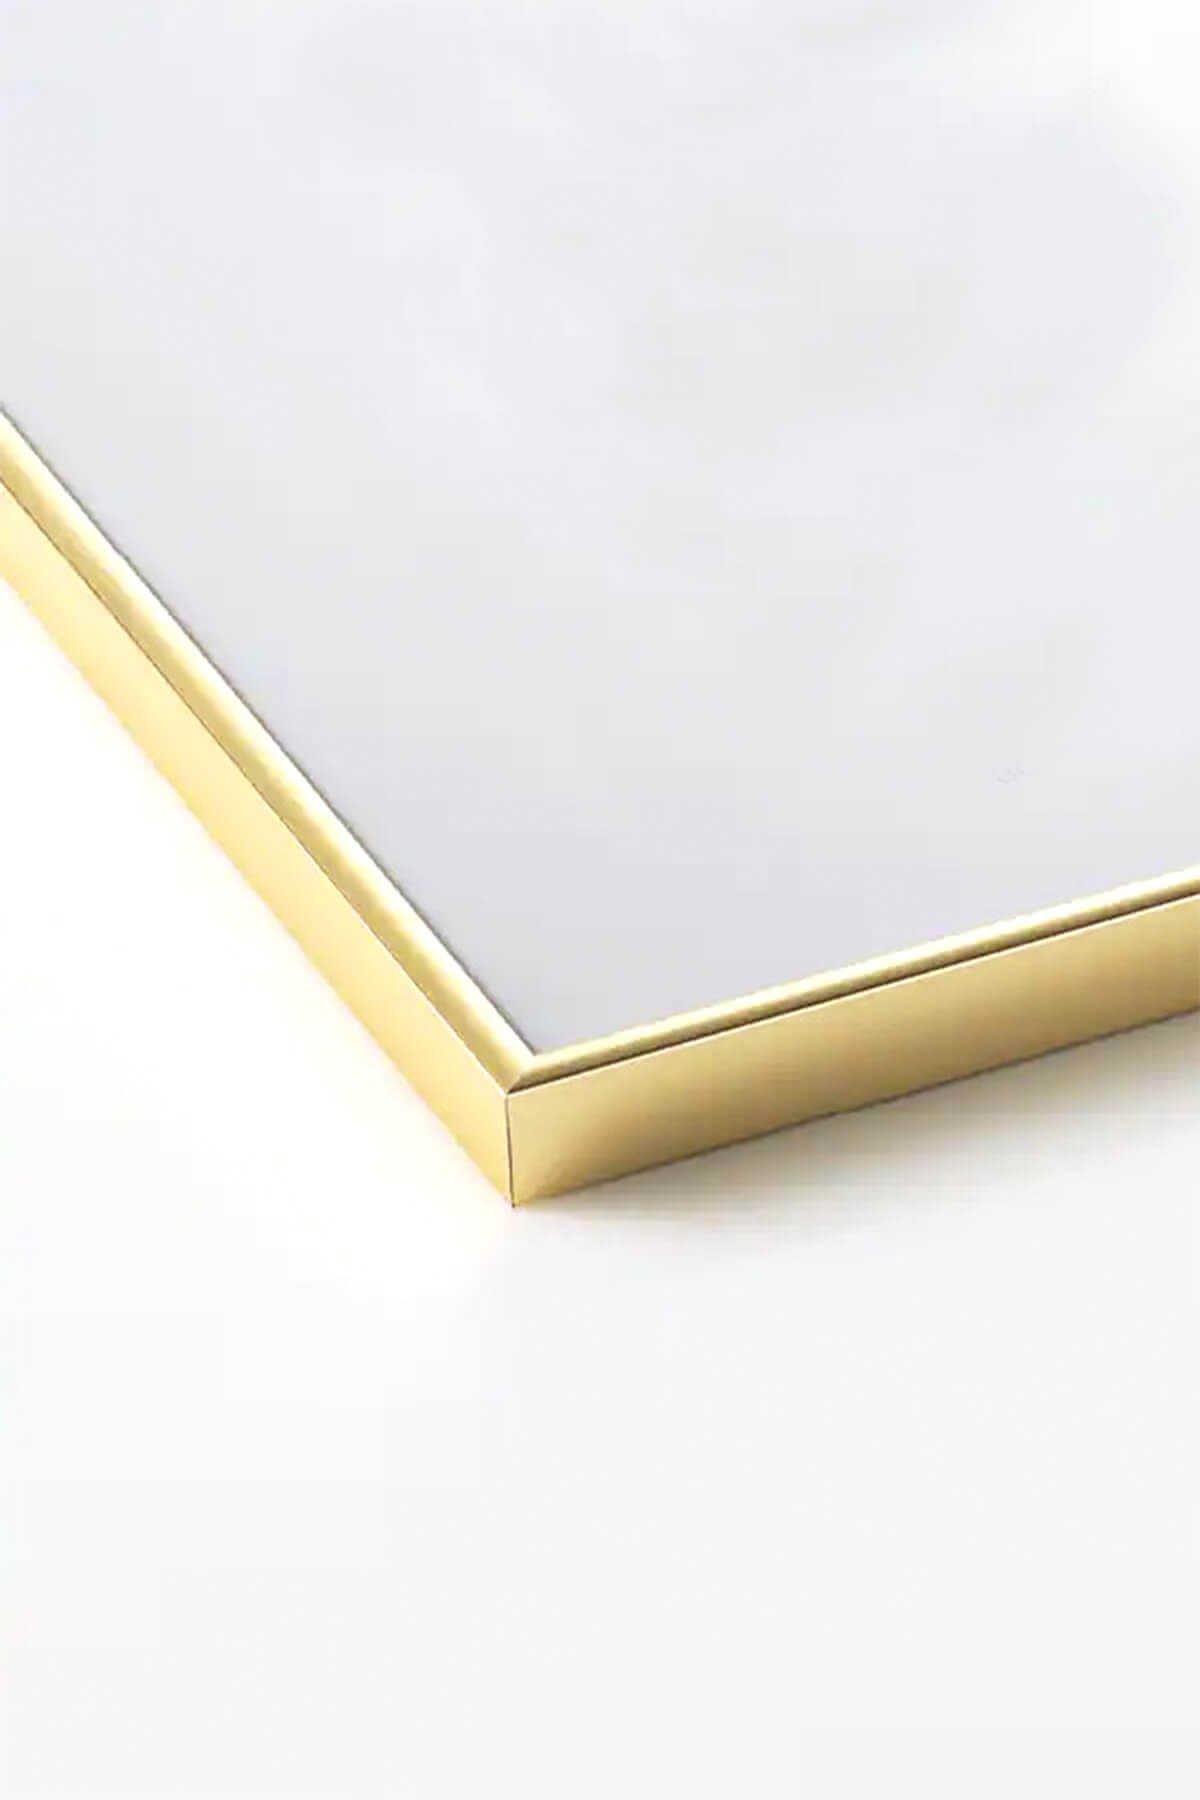 Metal Gold Çerçeve (50x70 cm) | fekarehome